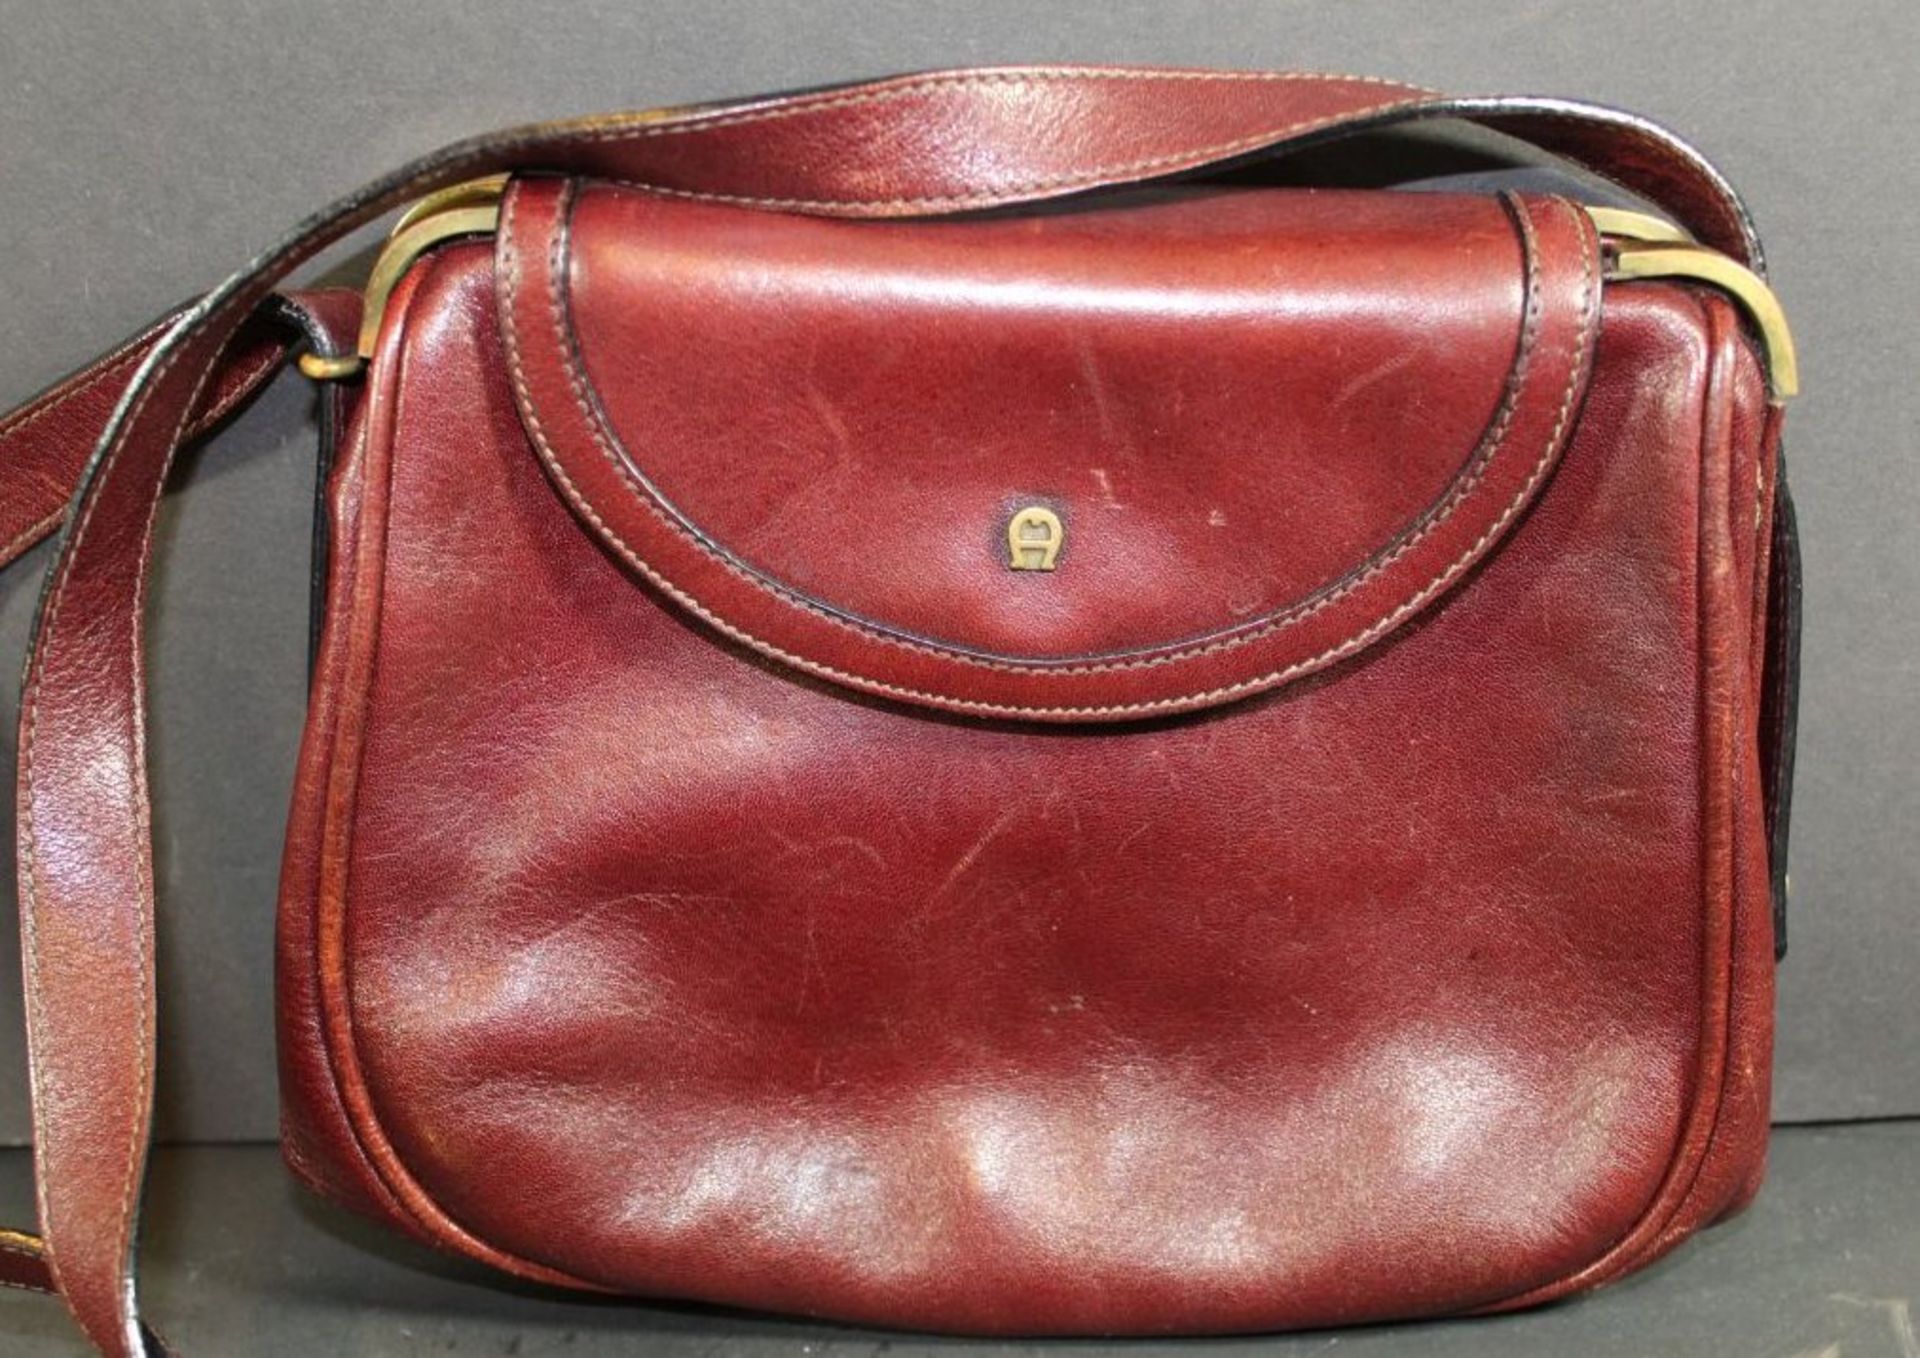 Handtasche "Aigner" Leder, rot, Gebrauchsspuren, 16x20 cm